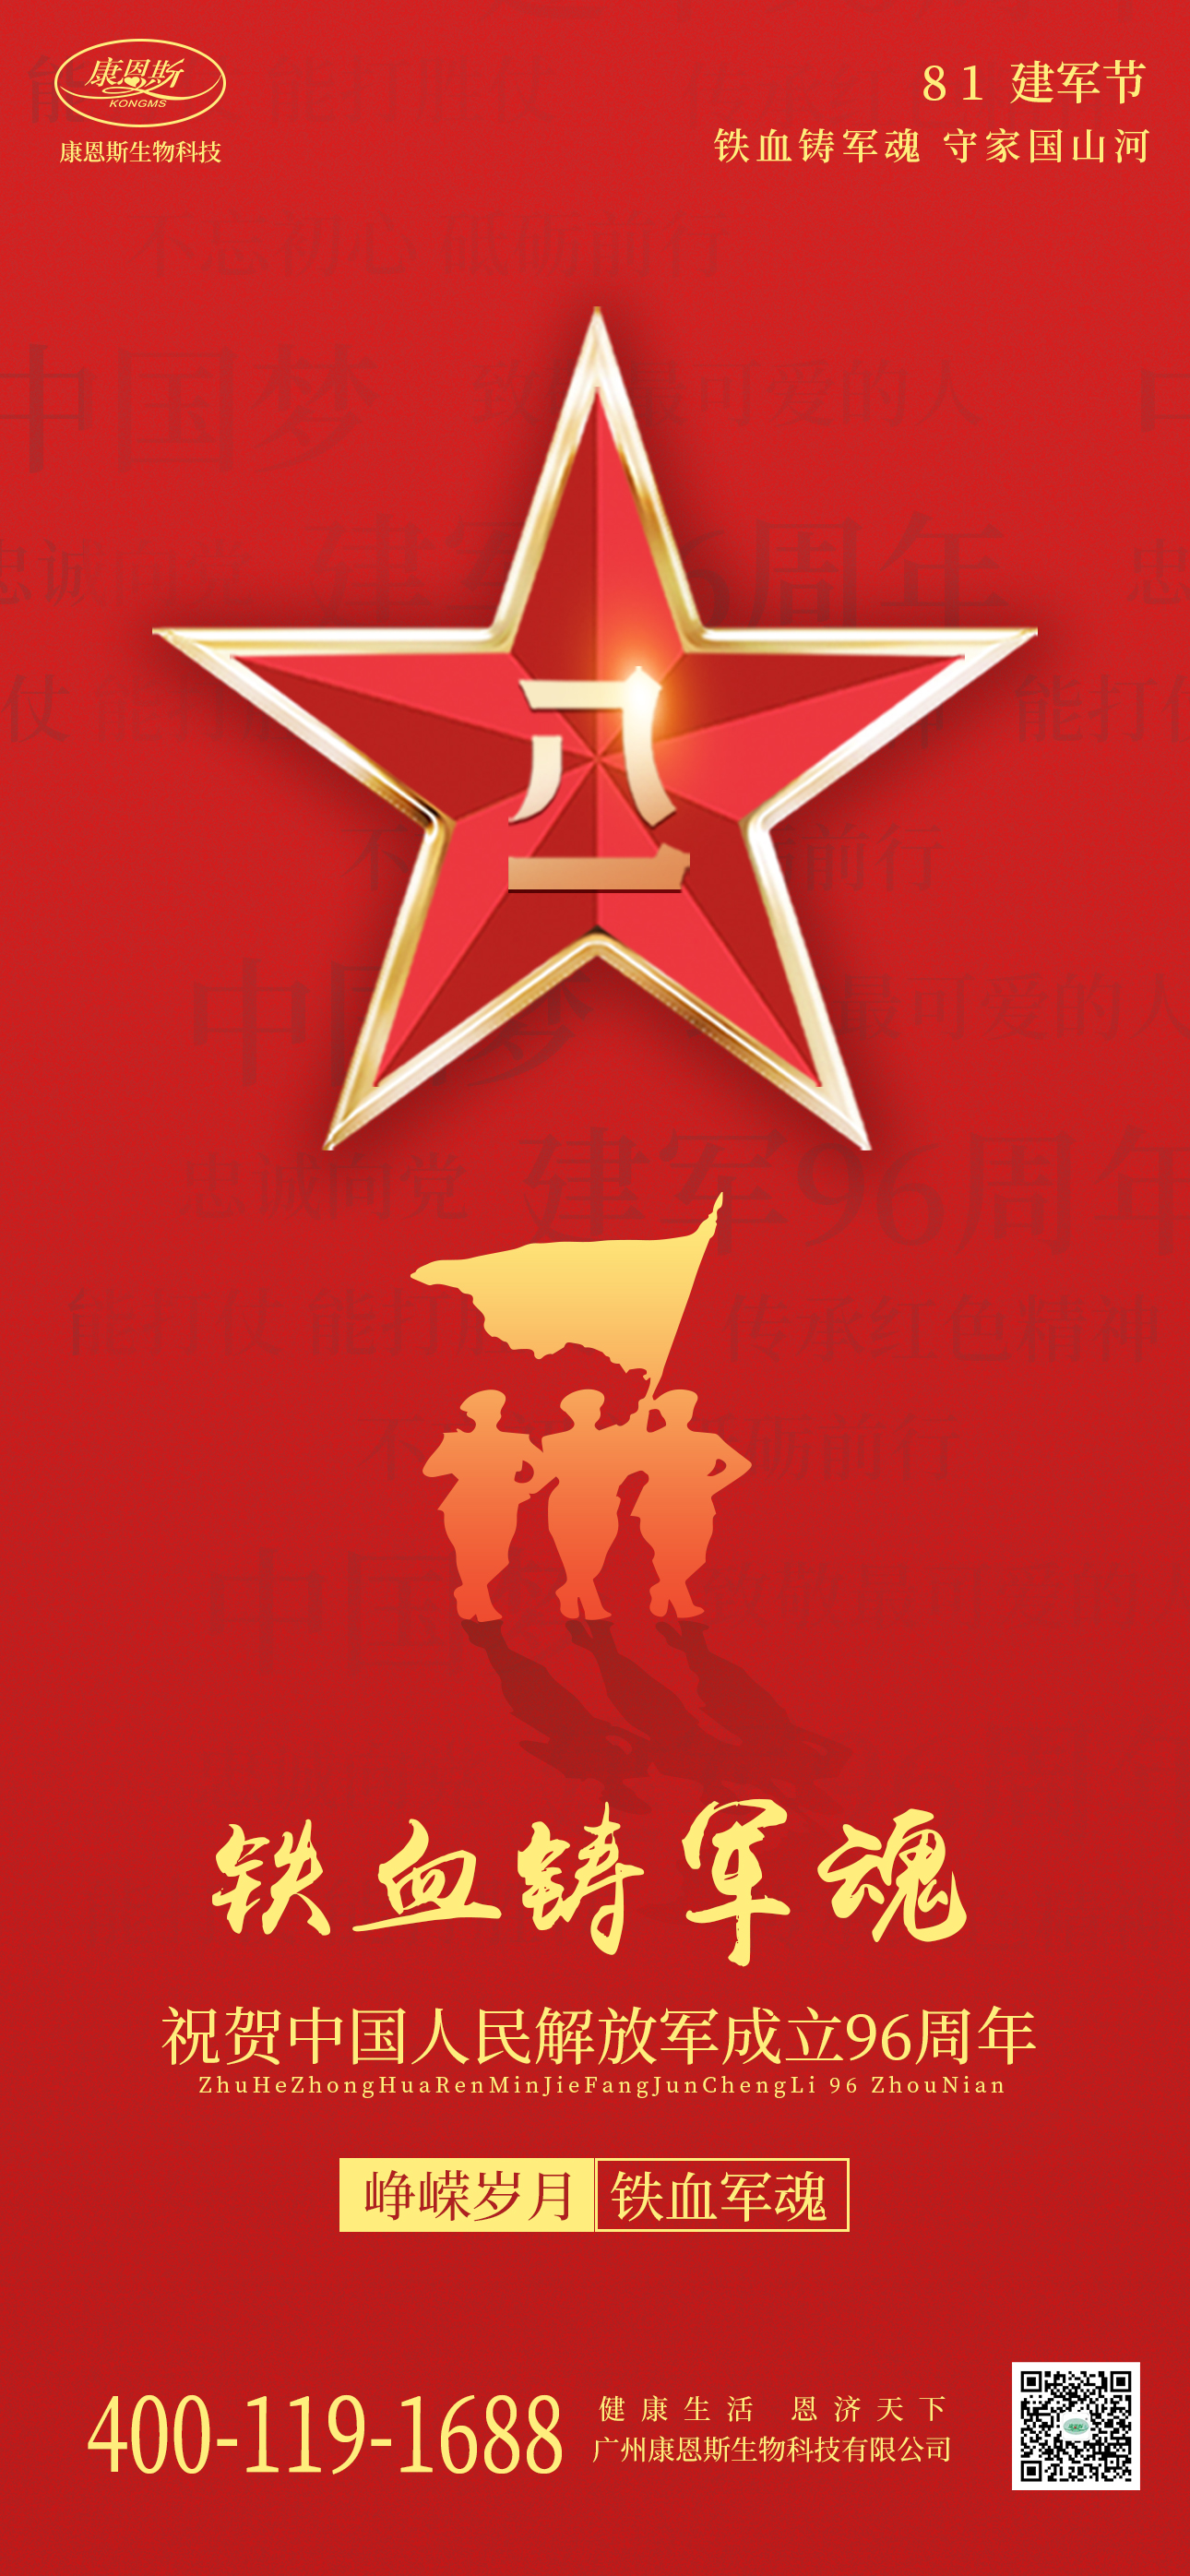 康恩斯祝贺中国人民解放军成立96周年